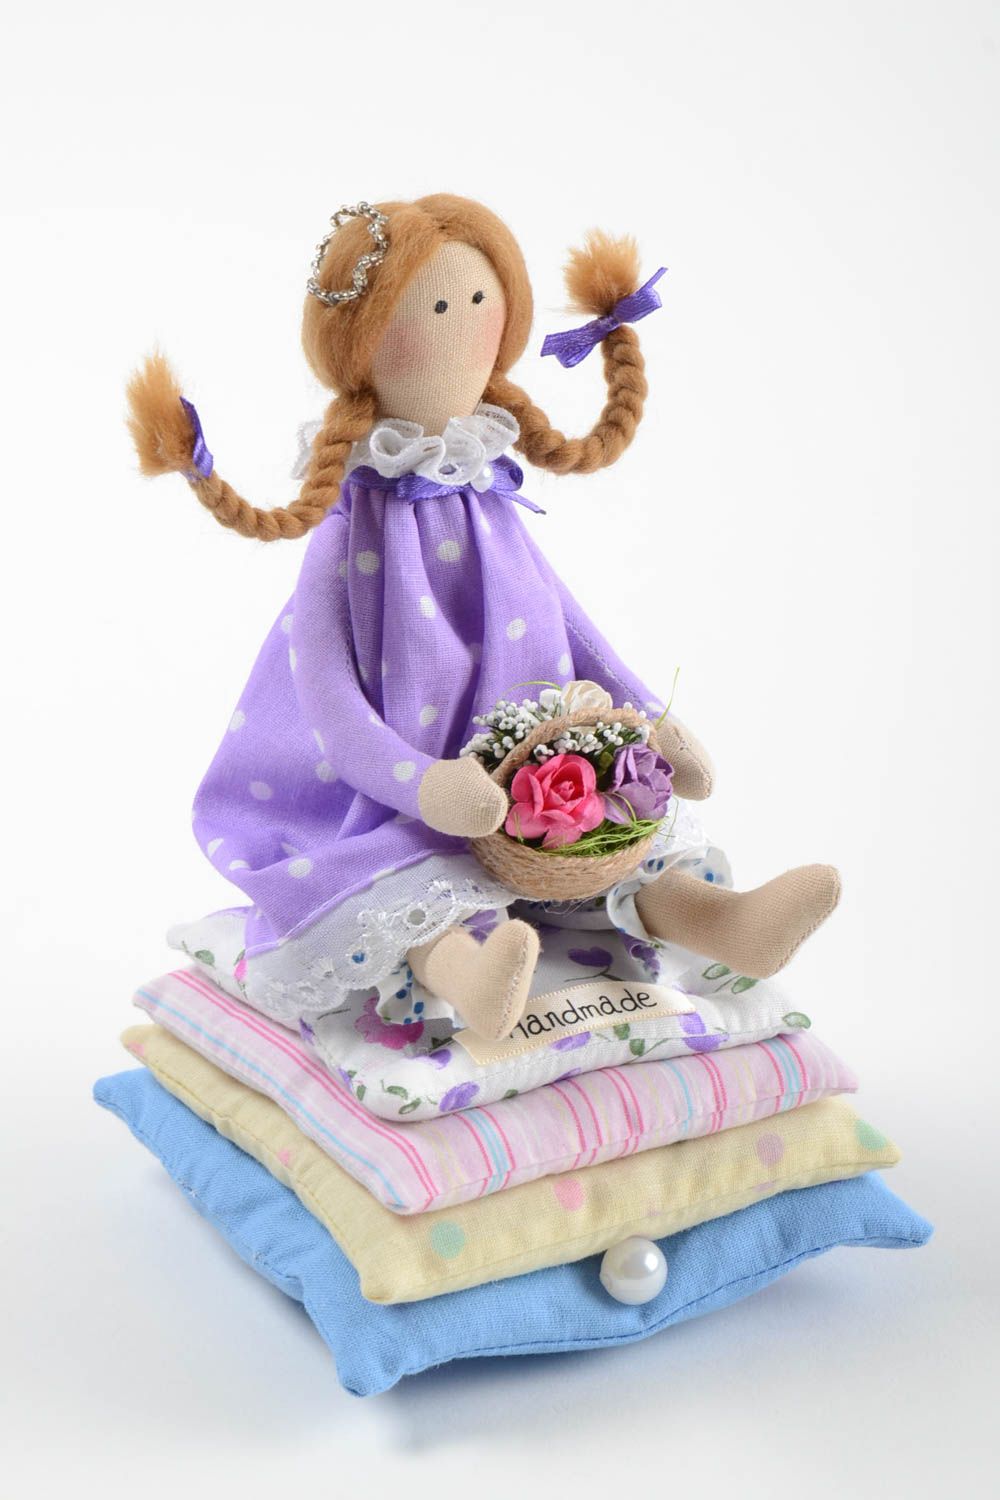 Интерьерная игрушка из хлопка мягкая авторская ручной работы Принцесса с цветами фото 2